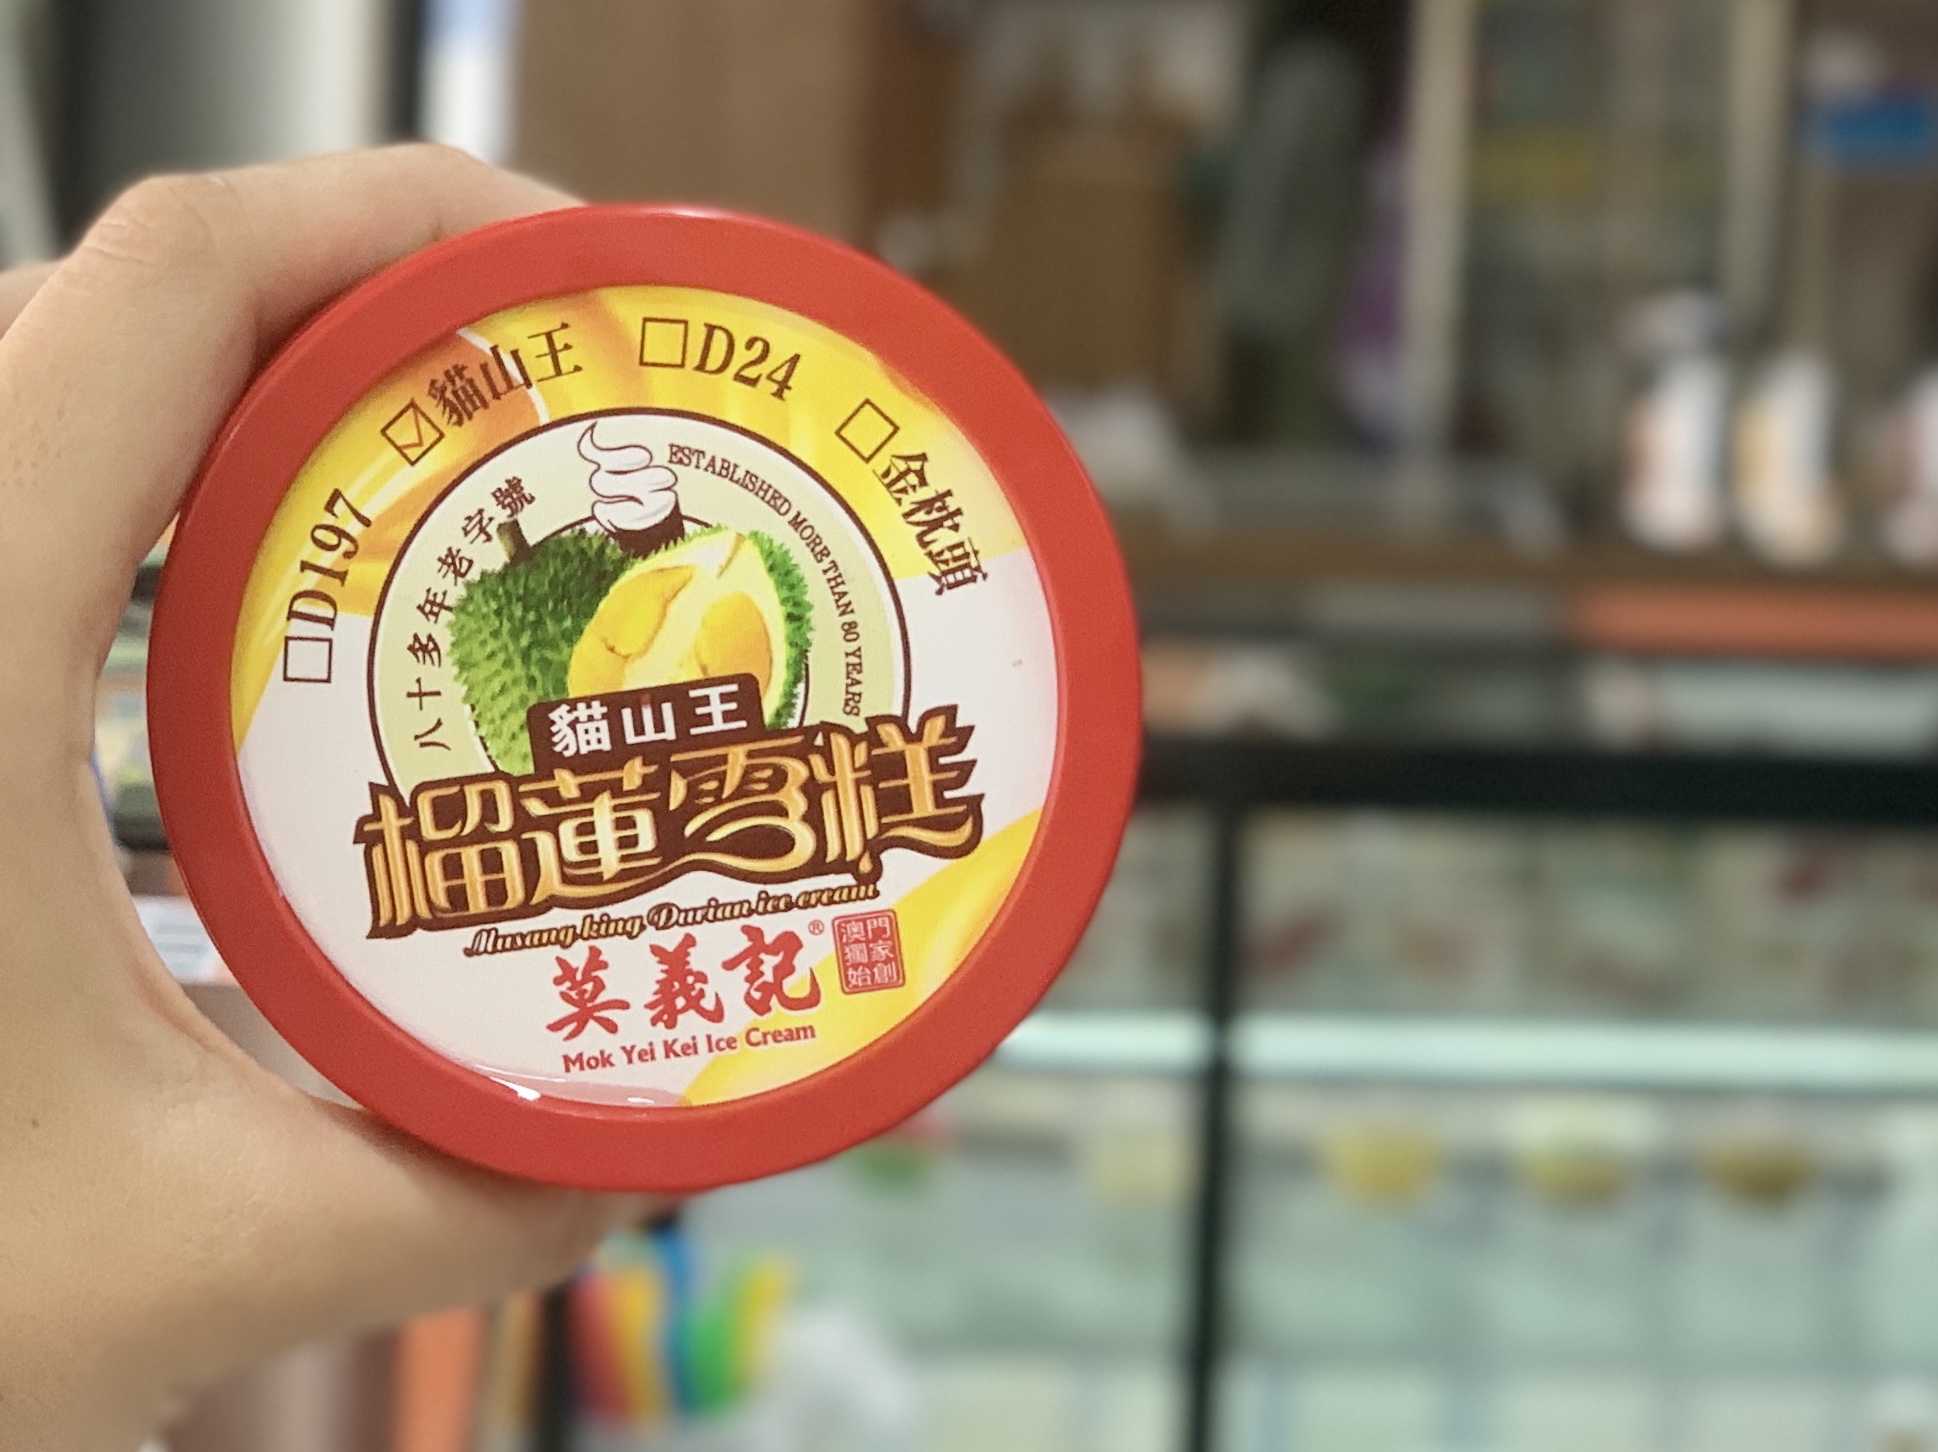 Mok Yei Kei Taipa Village Durian Ice Cream in Pack Macau Lifestyle